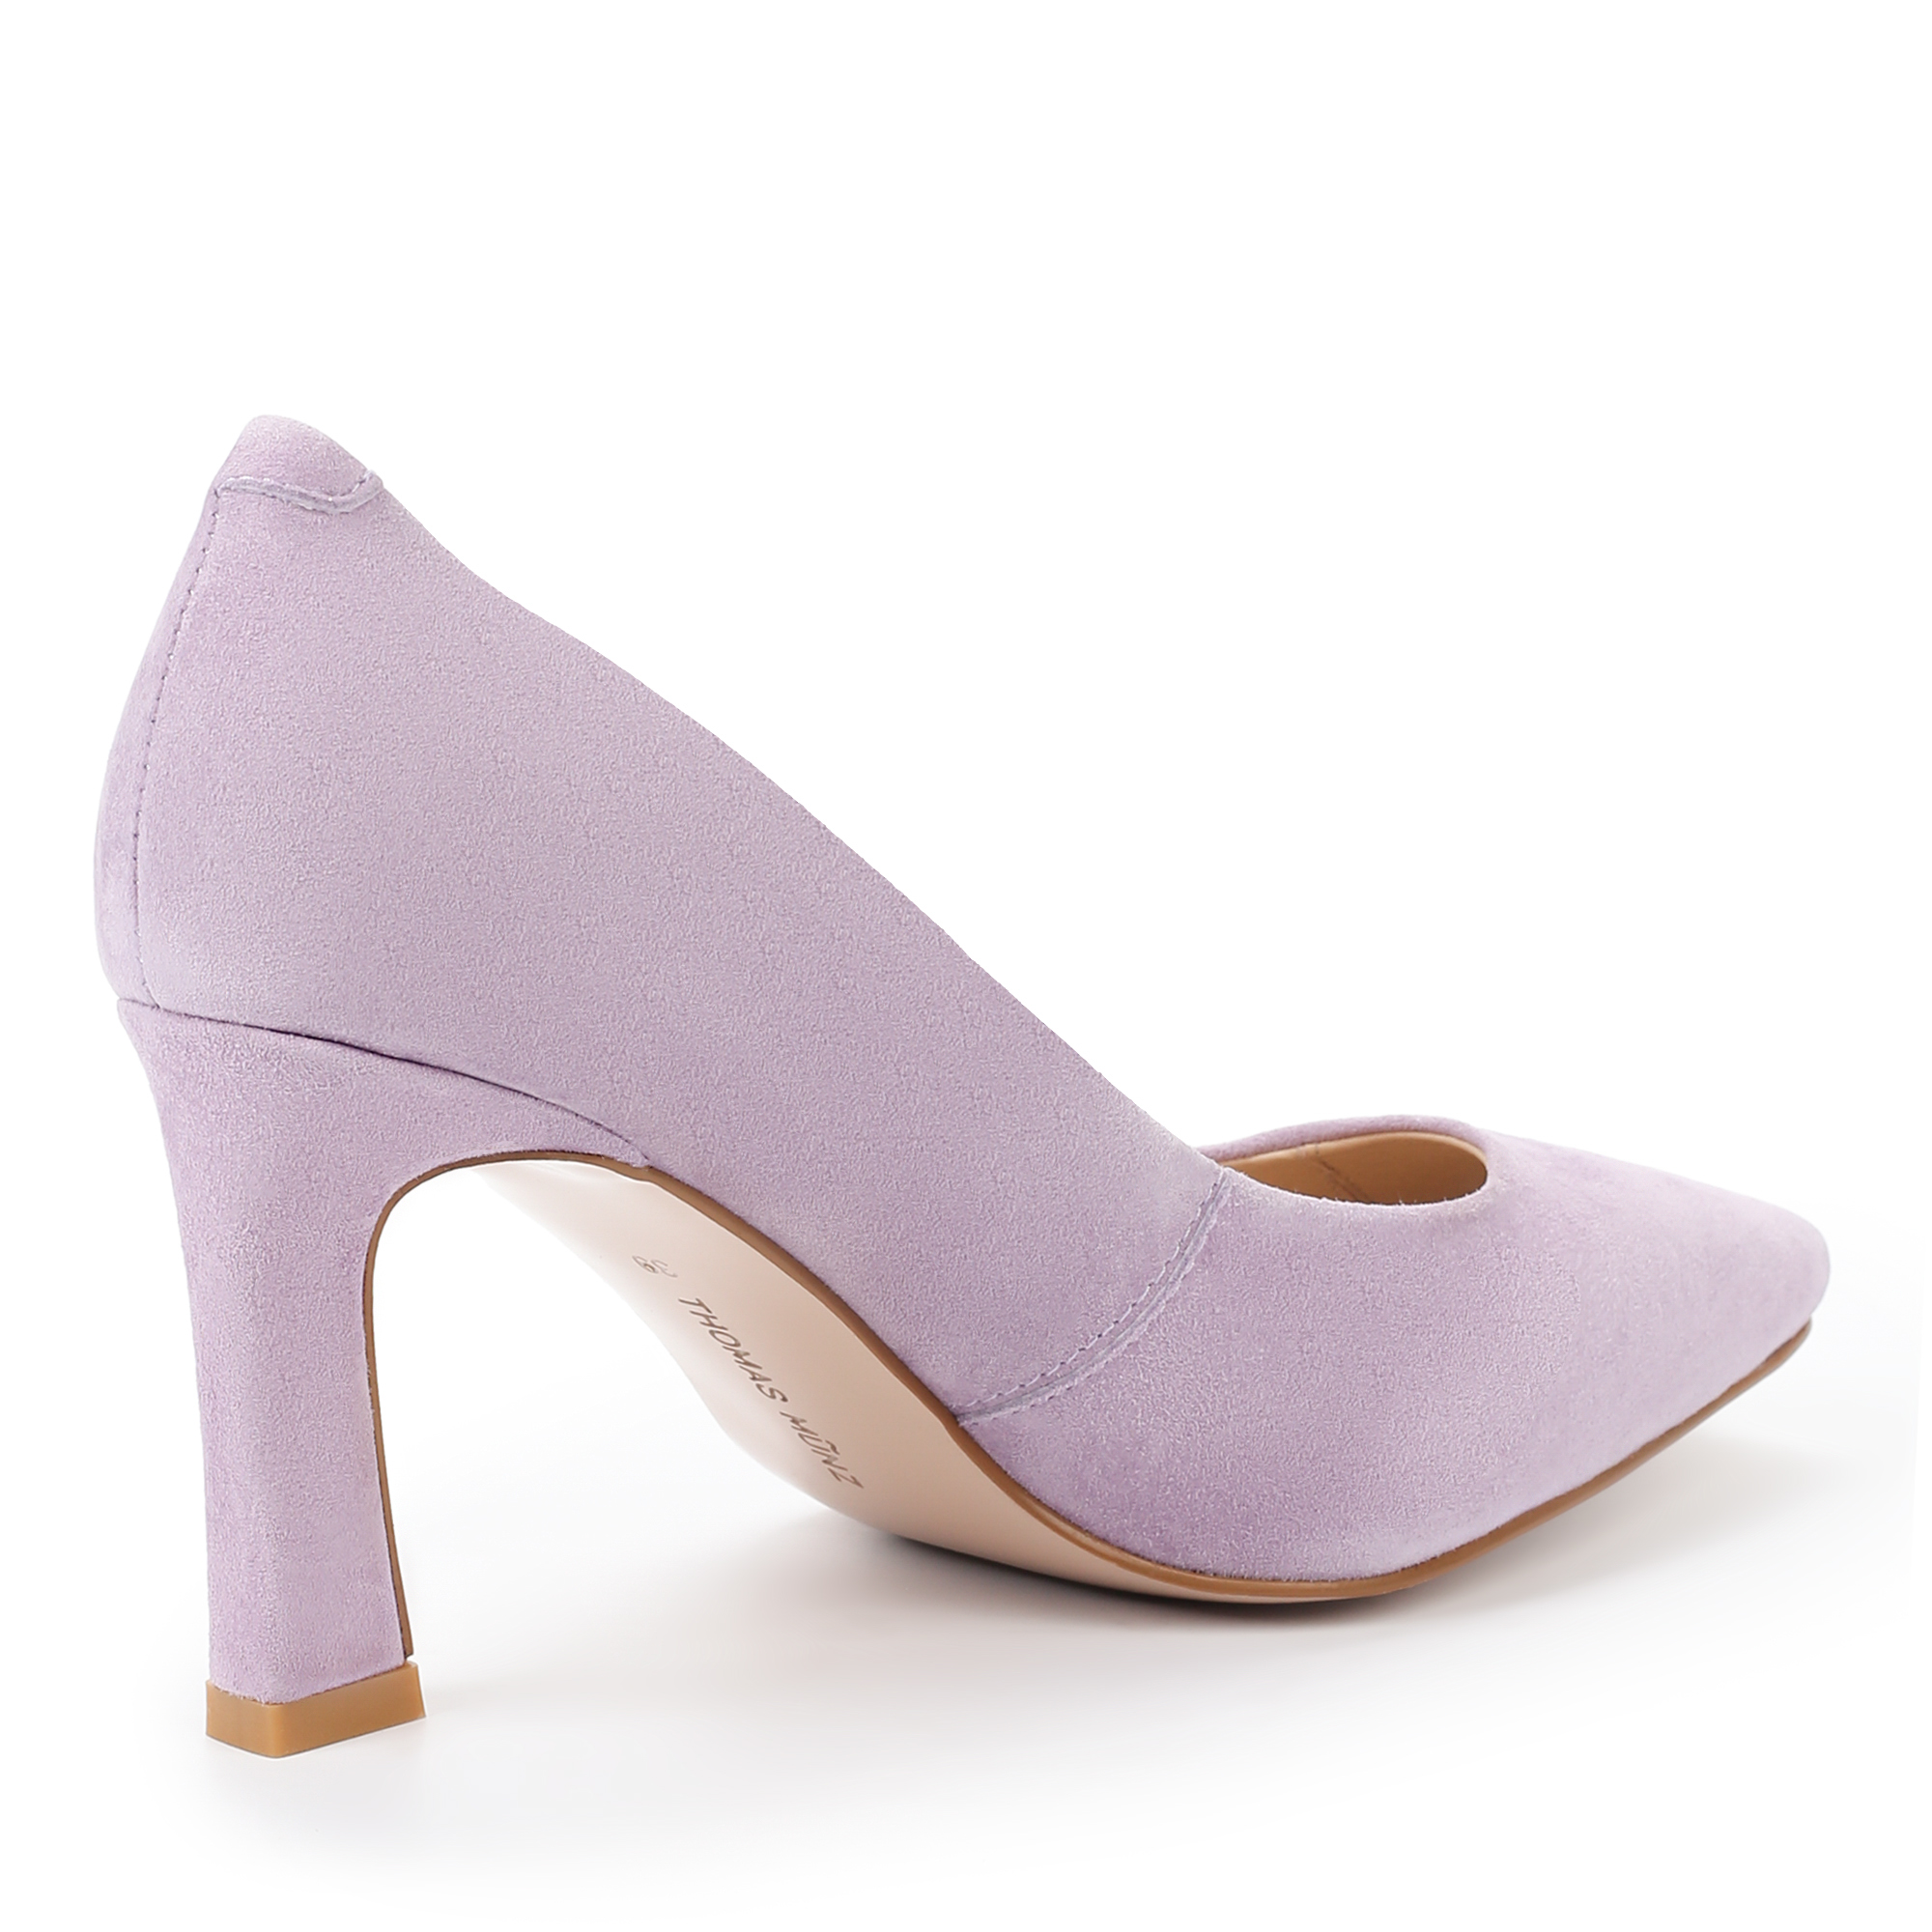 Туфли Thomas Munz 234-460A-10607, цвет фиолетовый, размер 39 - фото 3